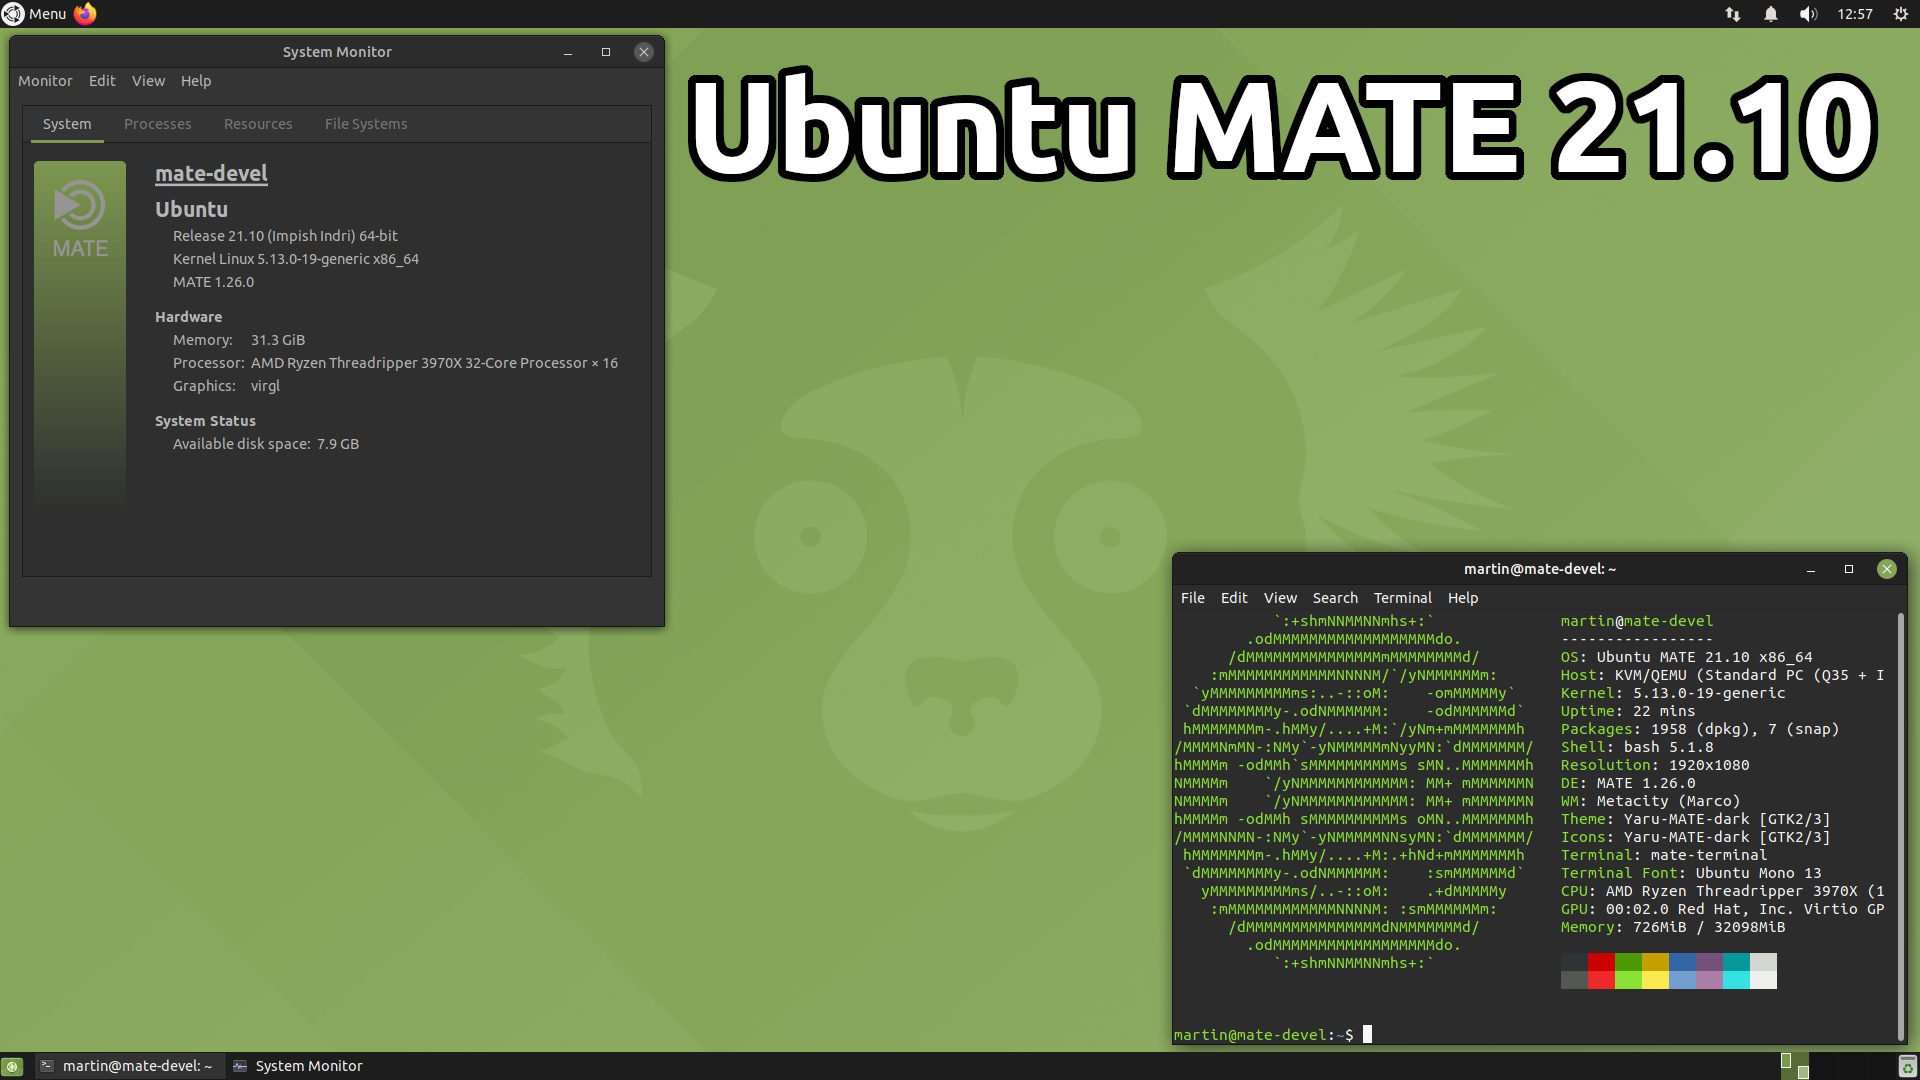 koelkast Neerwaarts vervagen Ubuntu MATE 21.10 Release Notes | Ubuntu MATE